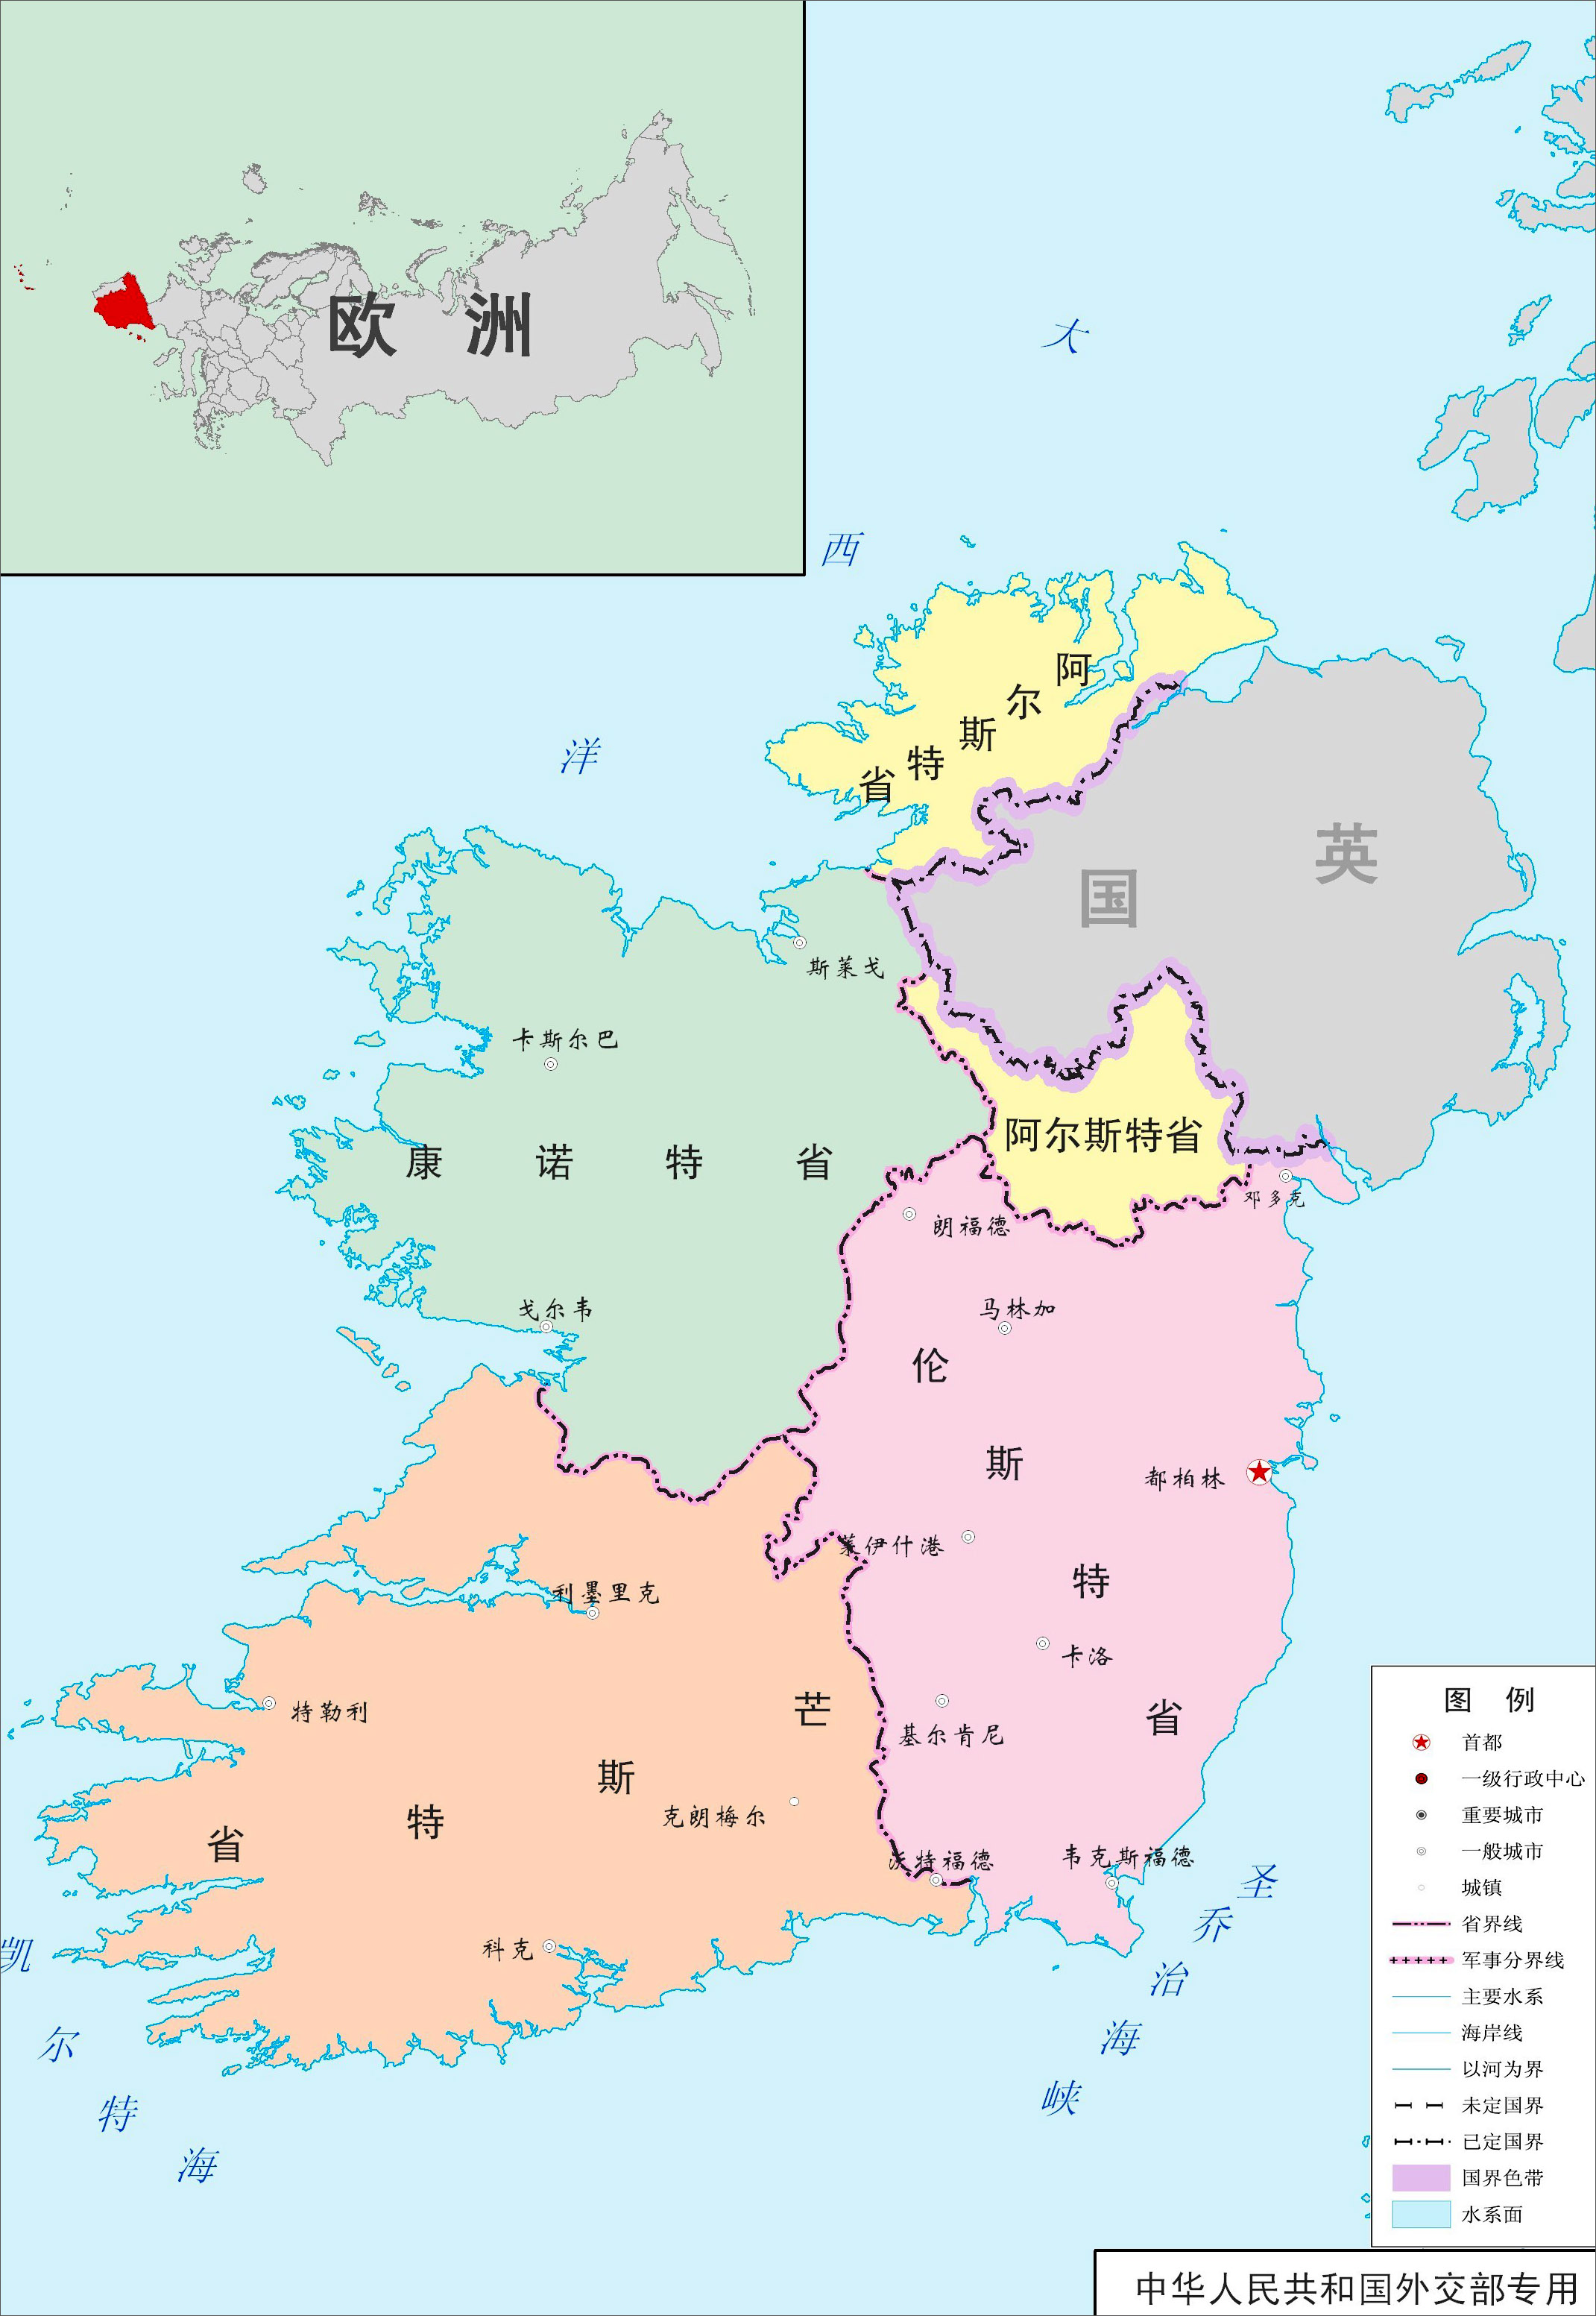 地广人稀的爱尔兰共和国,其面积相当中国一个省,人口却不到500万,仅仅